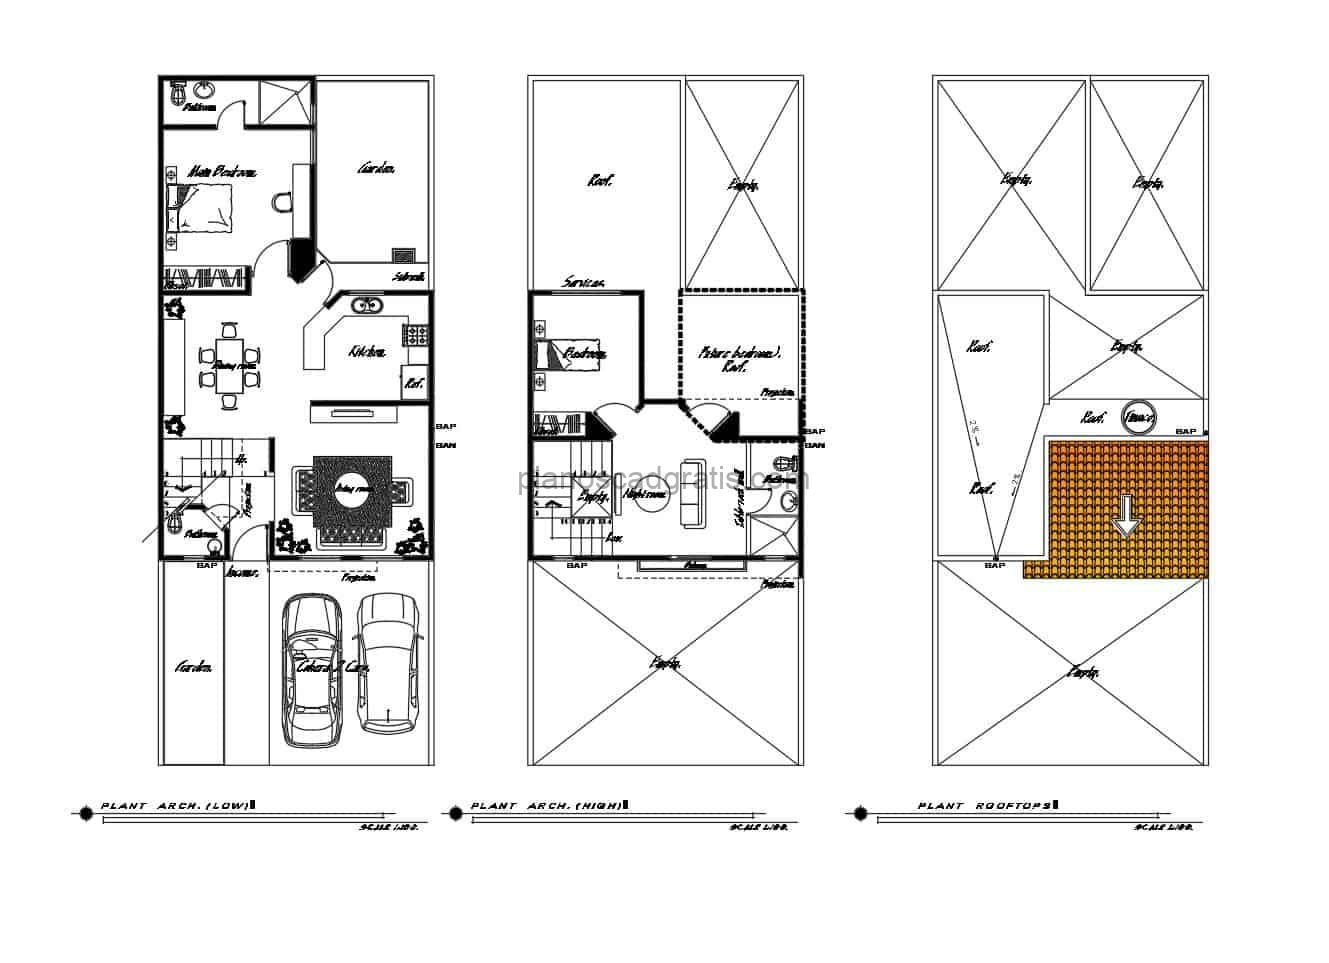 planos de autocad dwg de residencia de dos niveles con dos habitaciones y planos dimensionados, fachadas, secciones y detalles constructivos, planos para descarga gratis formato dwg de autocad